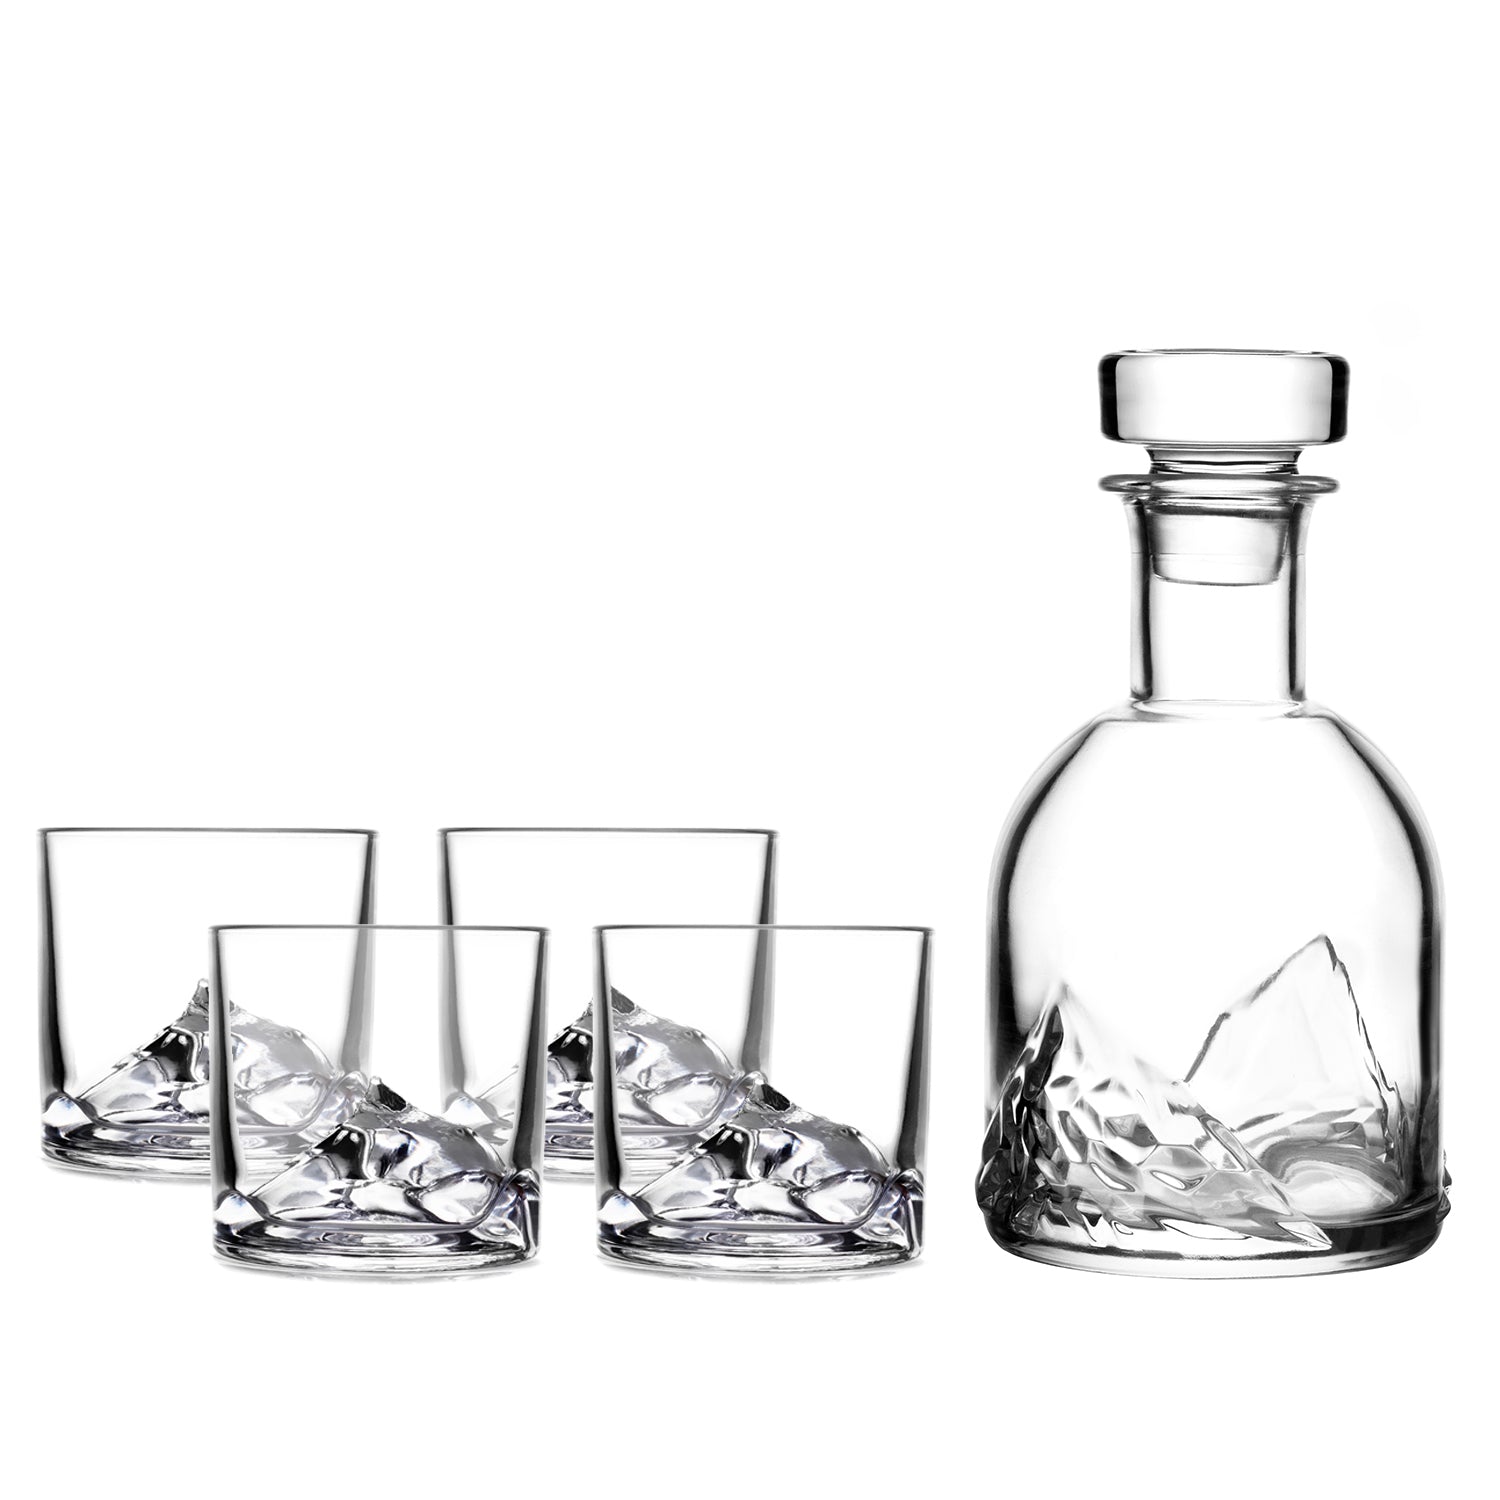 China Luxury Whiskey Stones Gift Set Whiskey Decanter wine Glasses